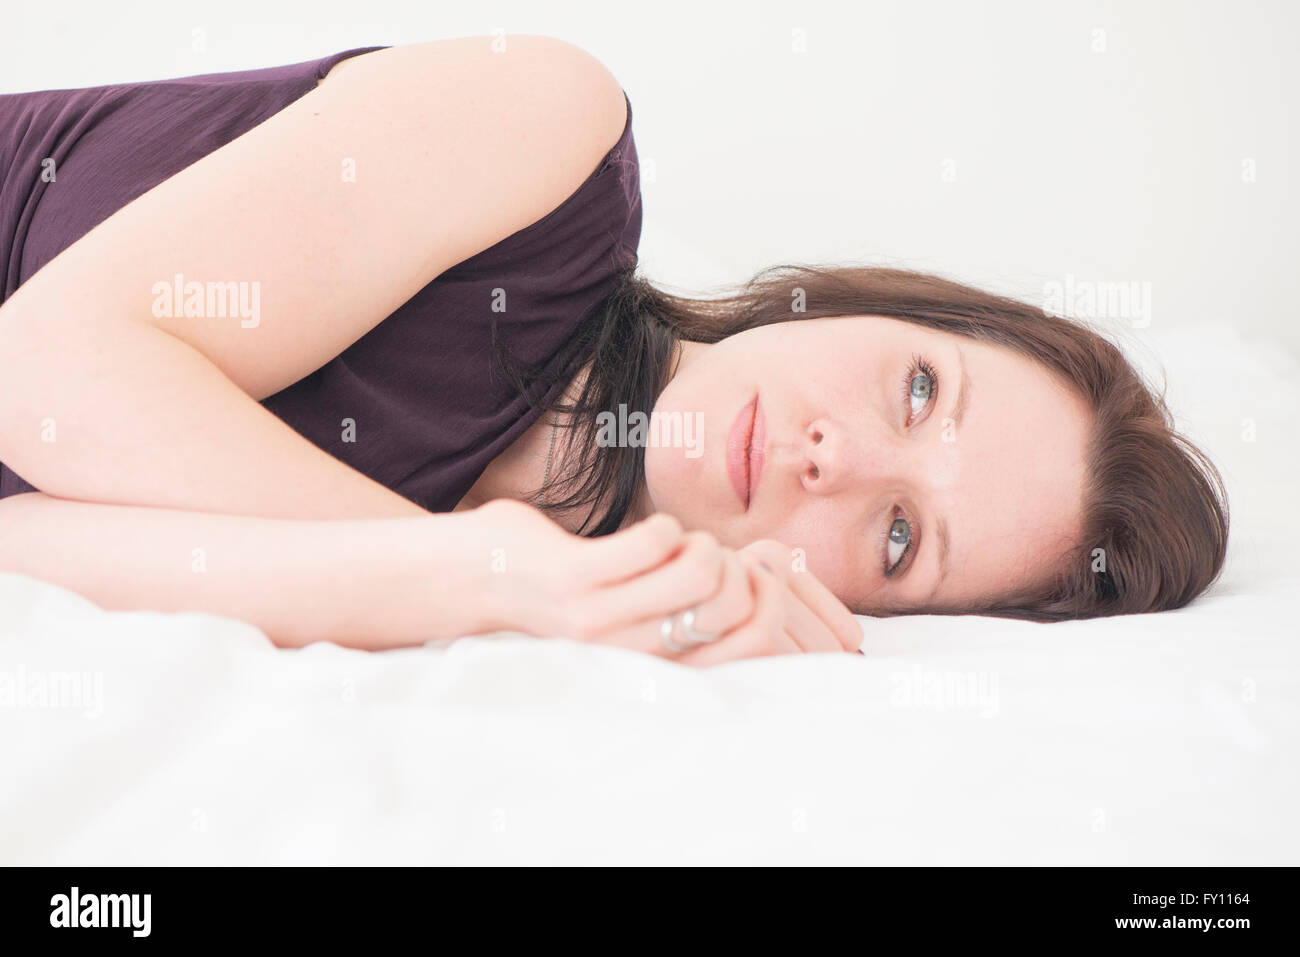 Retrato de mujer joven acostado en su cama descansando. Ella está mirando a otro lado con una expresión grave y pensativa. Foto de stock